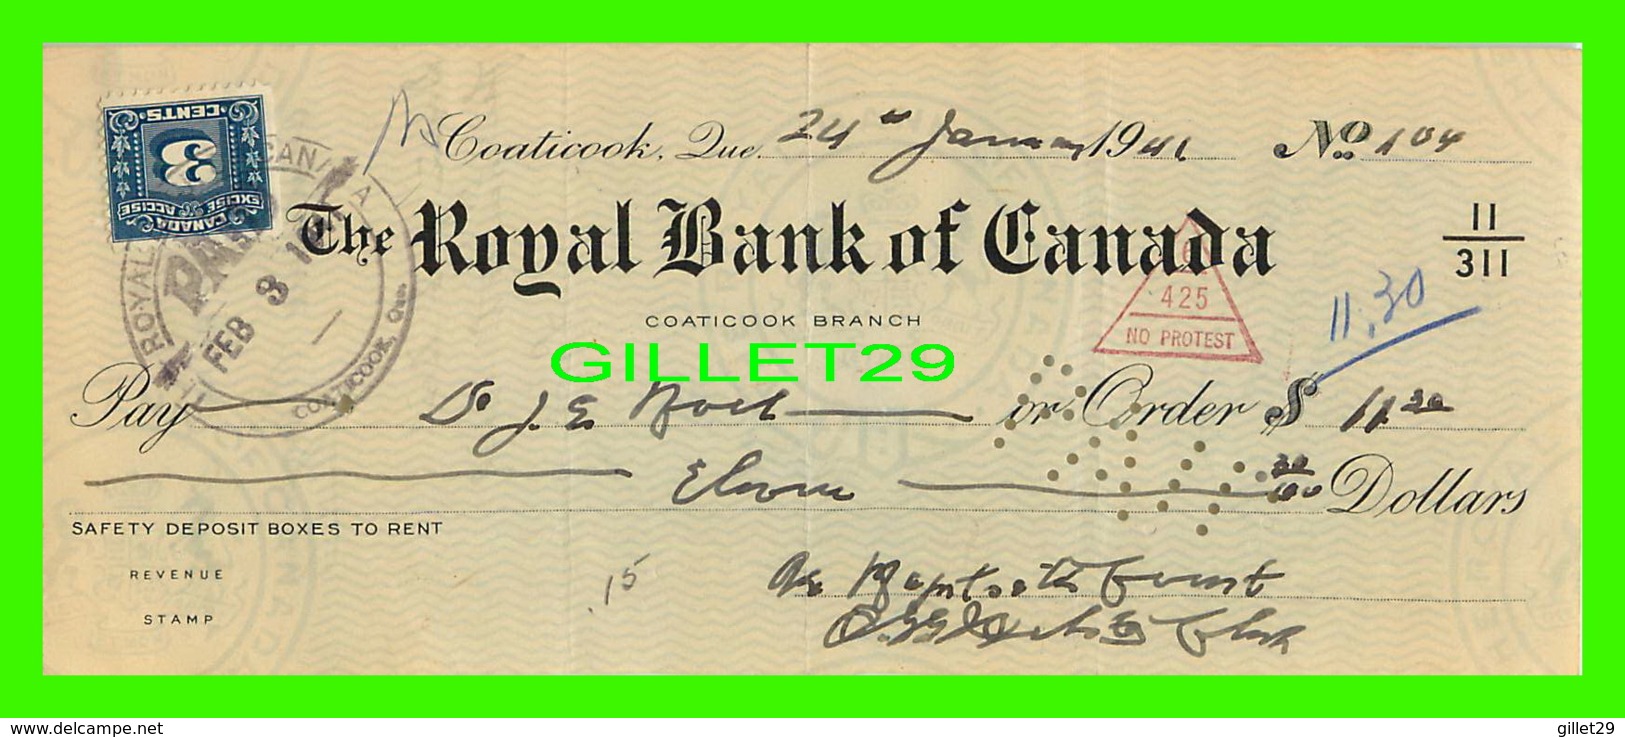 CHÈQUES - THE ROYAL BANK OF CANADA, COATICOOK BRANCH IN 1941 - DIMENSION 21,5 X 30 Cm - - Chèques & Chèques De Voyage